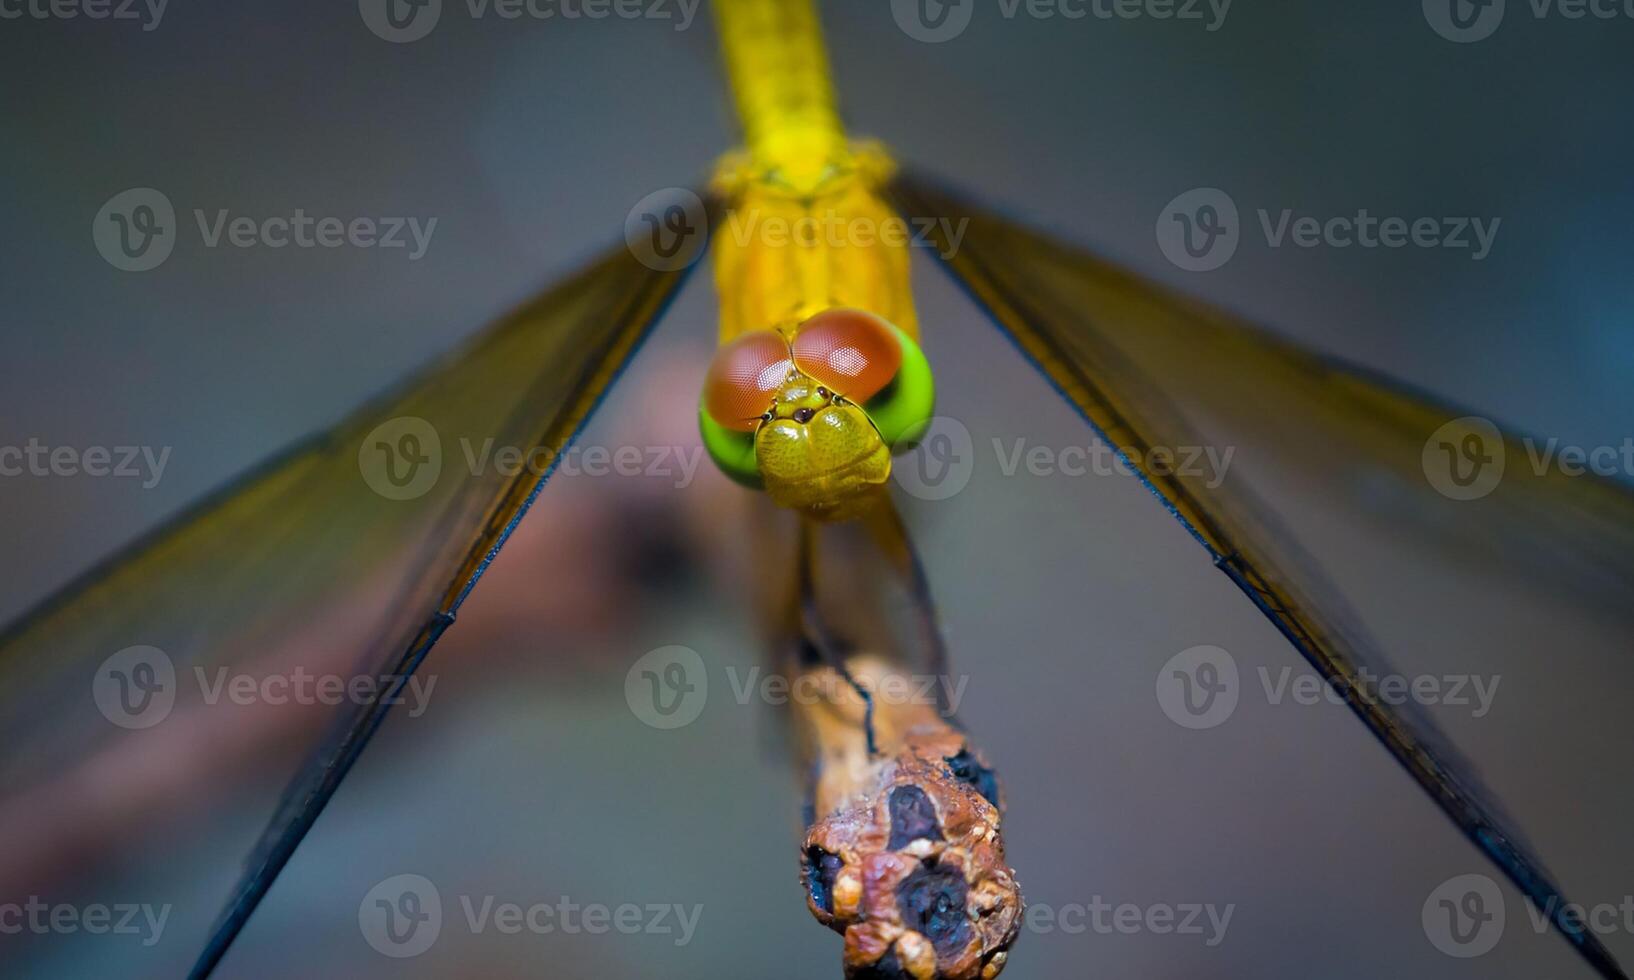 mycket detaljerad makro Foto av en trollslända. makro skott, som visar detaljer av de trollslända ögon och vingar. skön trollslända i naturlig livsmiljö